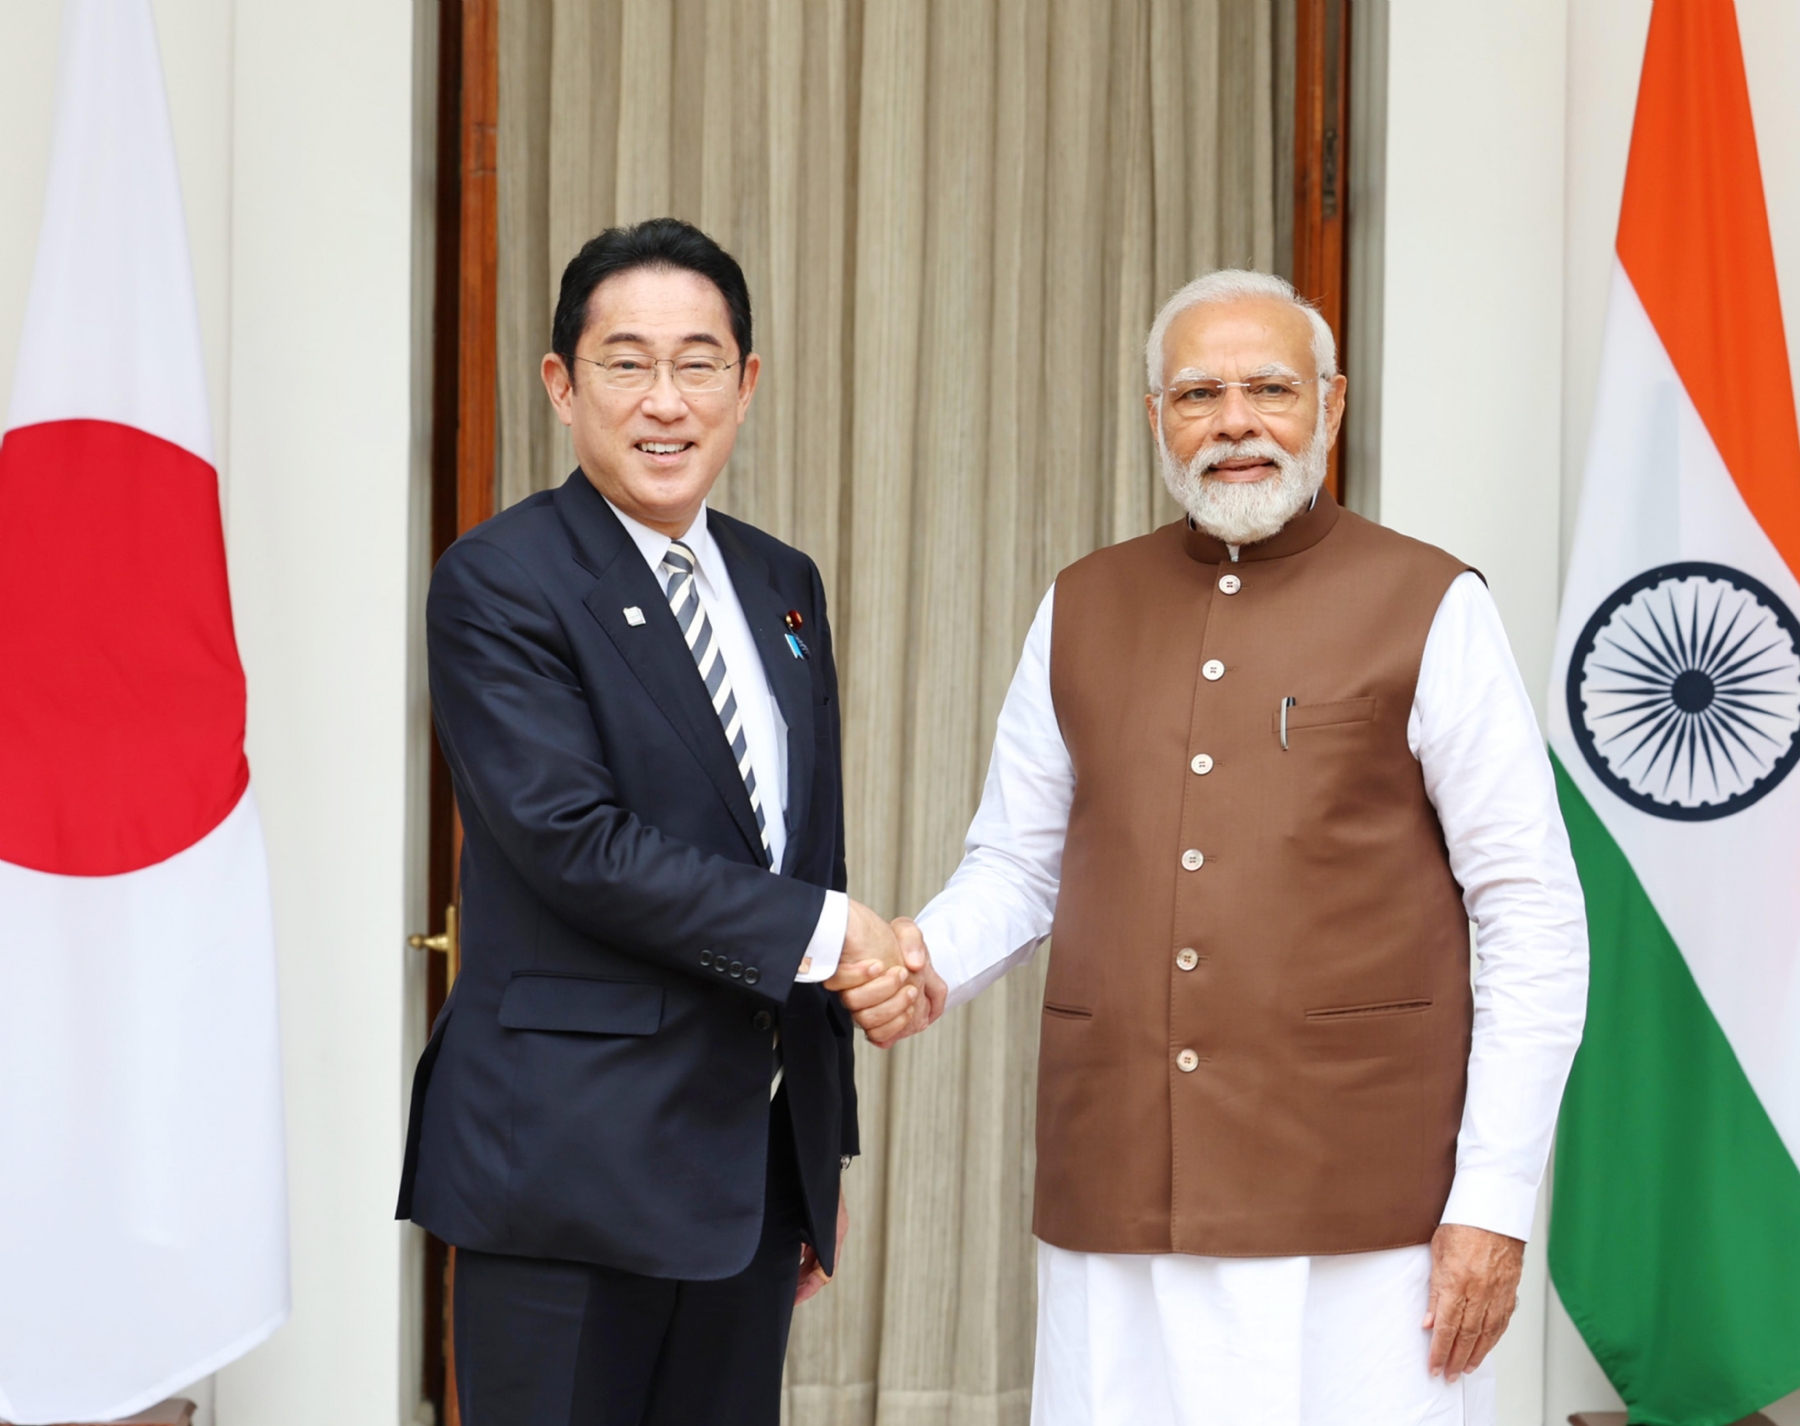 नई दिल्ली में सोमवार 20 मार्च को हैदराबाद हाउस में प्रधानमंत्री नरेन्द्र मोदी ने जापानी प्रधानमंत्री फुमियो किशिदा का औपचारिक स्वागत किया। हिन्दुस्थान समाचार/ फोटो गणेश बिष्ट